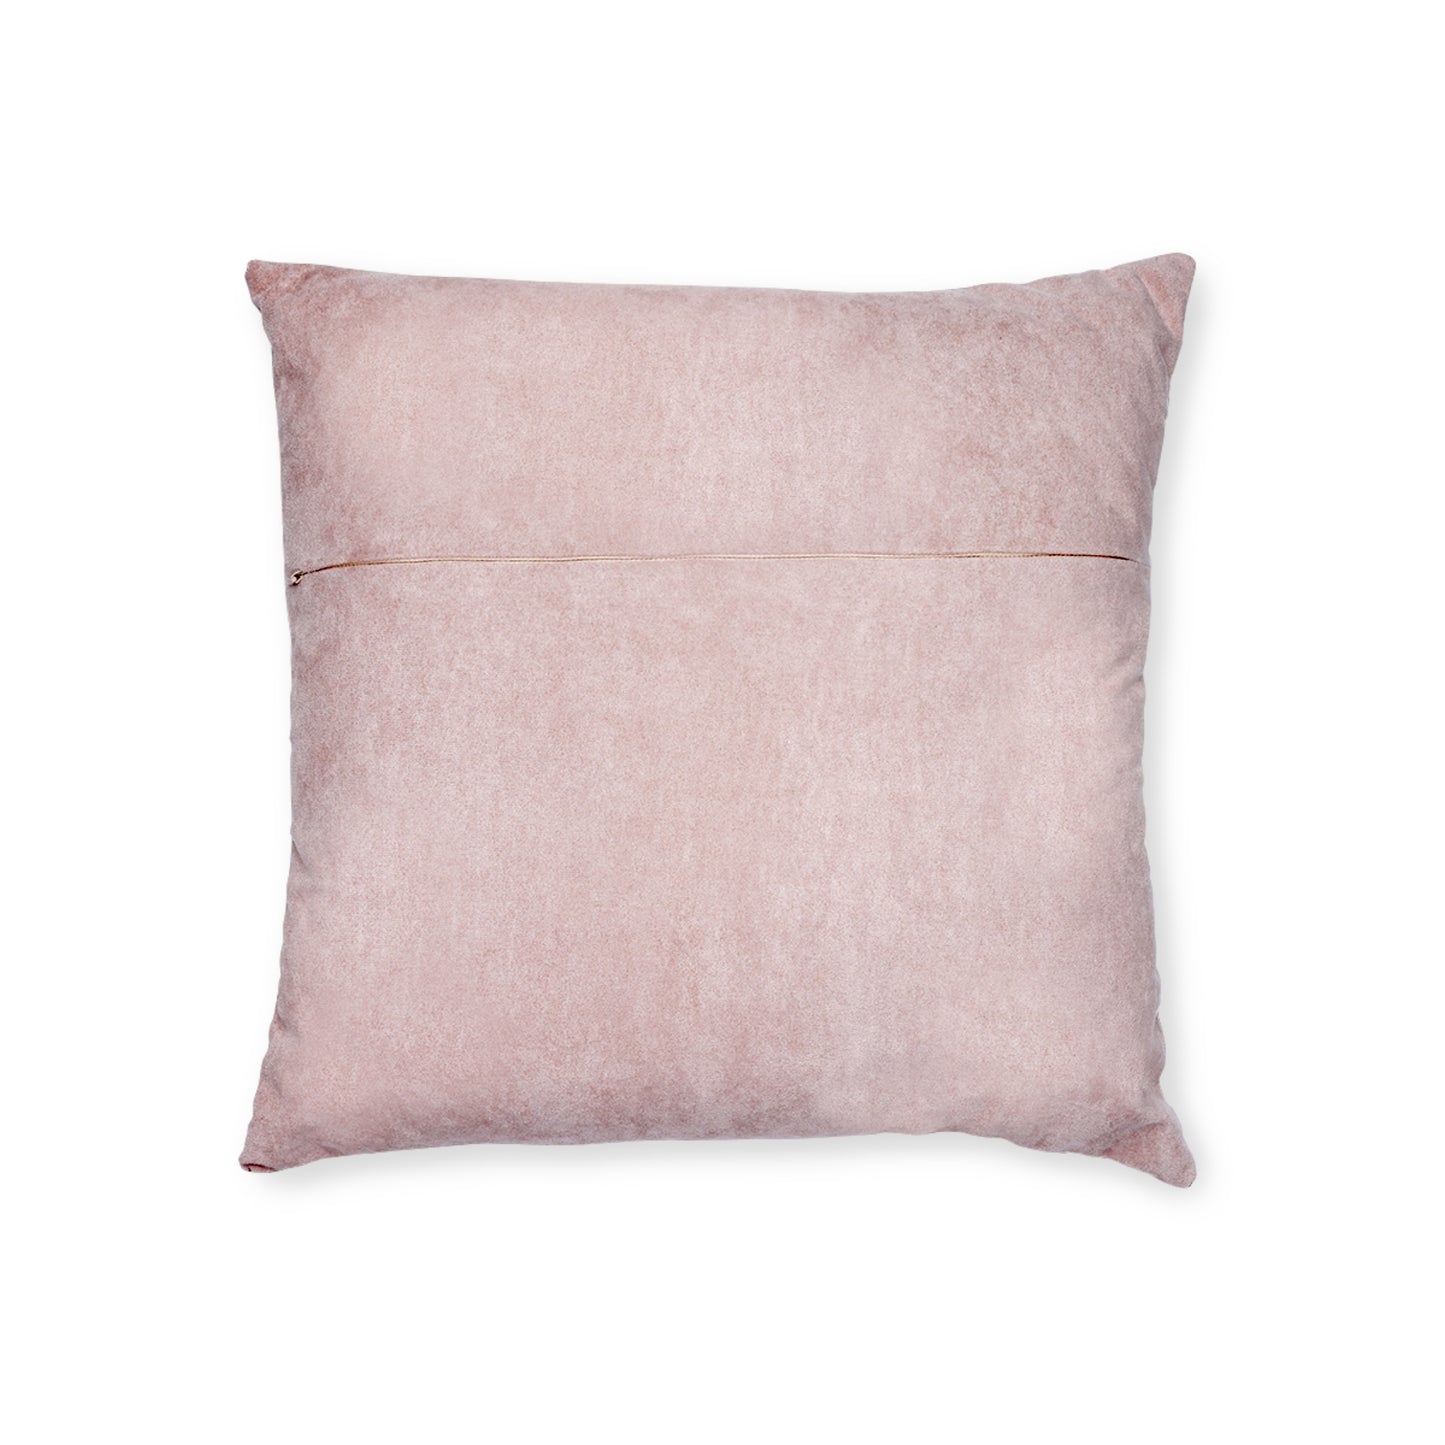 Square Viking Pillow - (Purple)